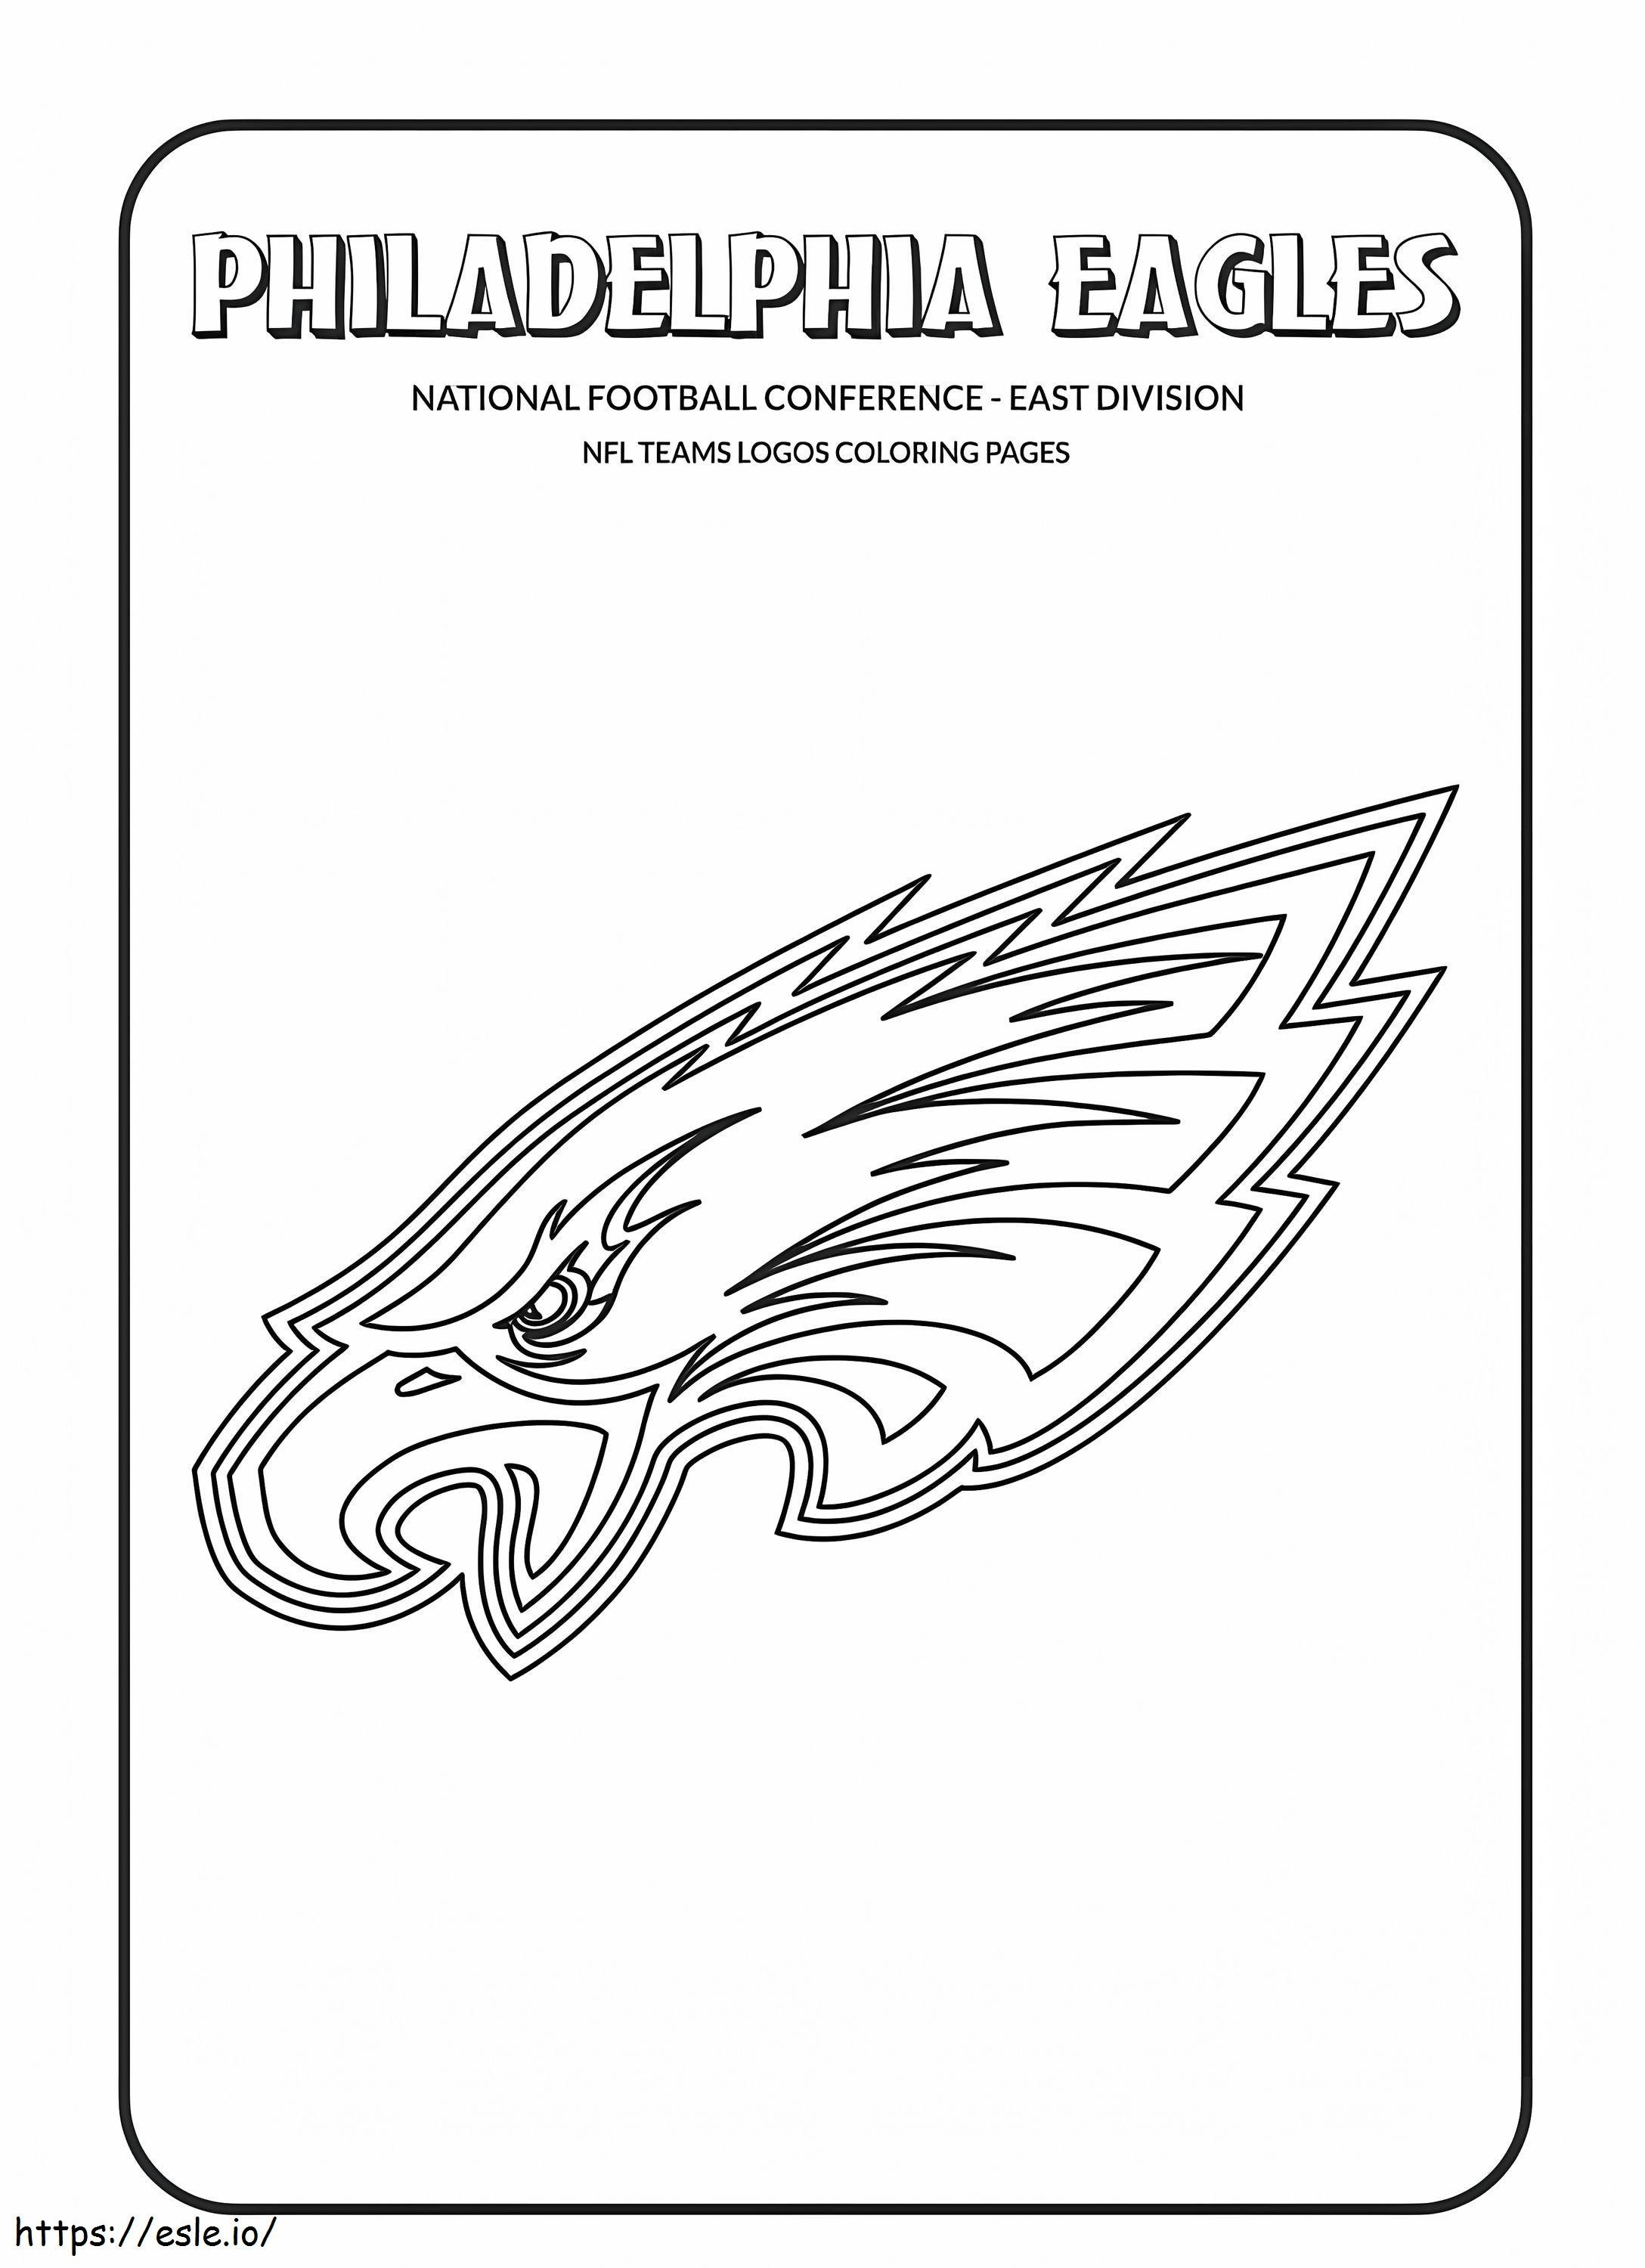 Logotipo pequeño de los Philadelphia Eagles para colorear